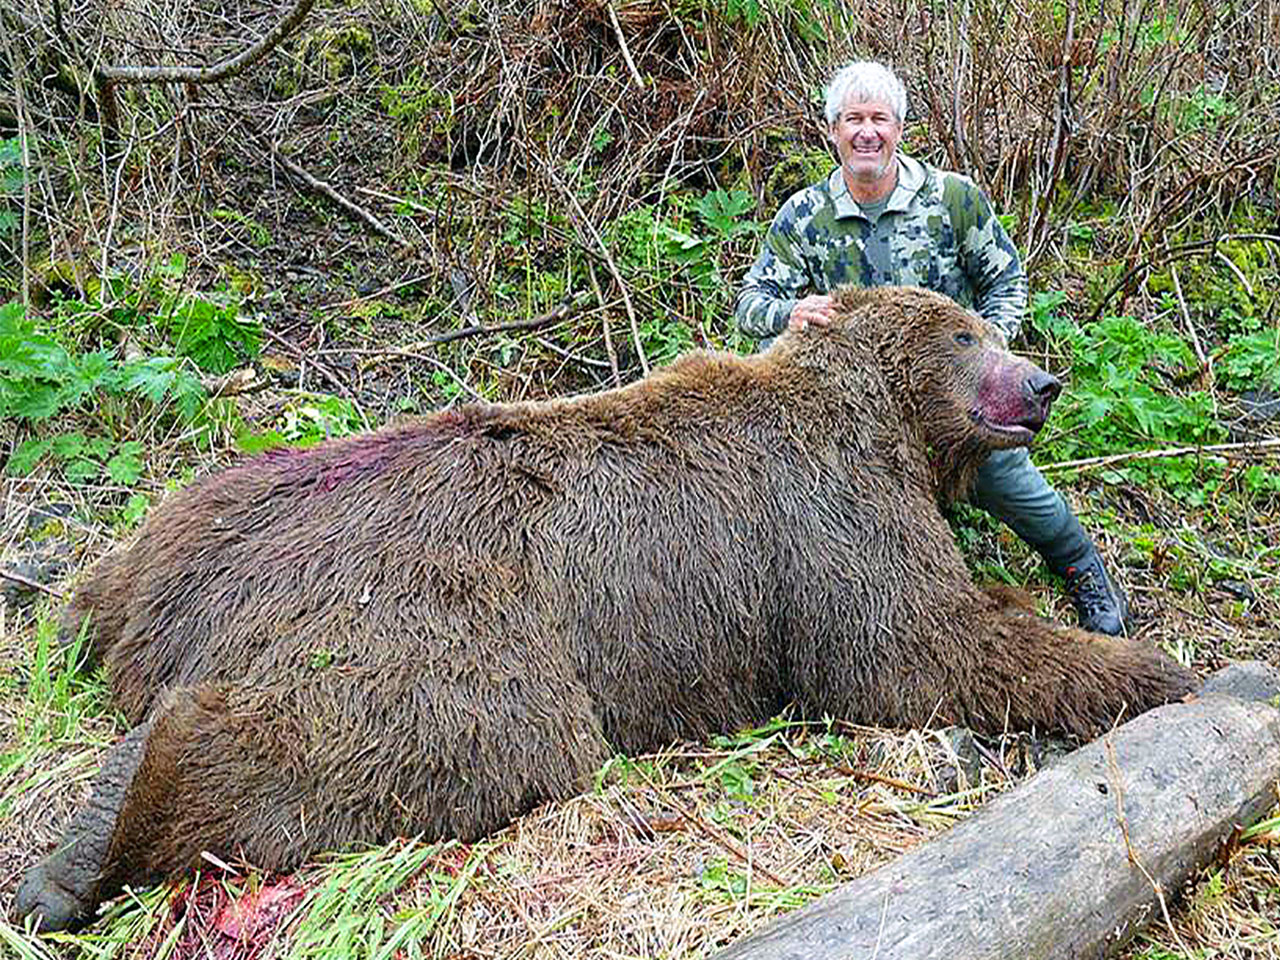 Alaska Peninsula Brown Bear Hunter with his catch